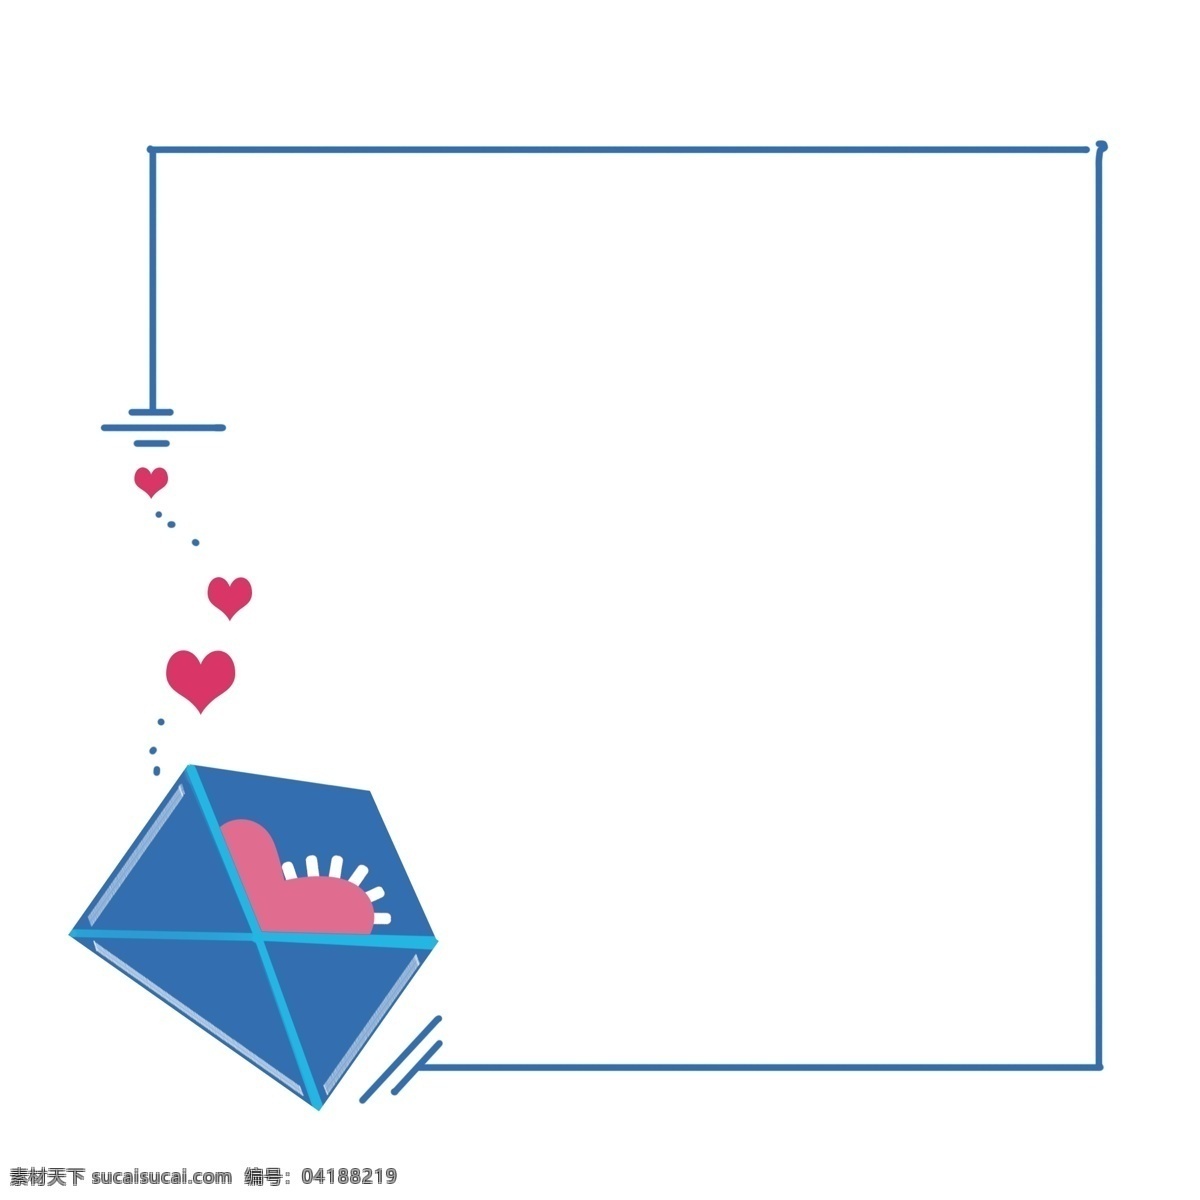 爱心 唯美 边框 图形 粉色爱心边框 对话框 唯美水彩蓝色 婚礼 卡片 背景 海报边框